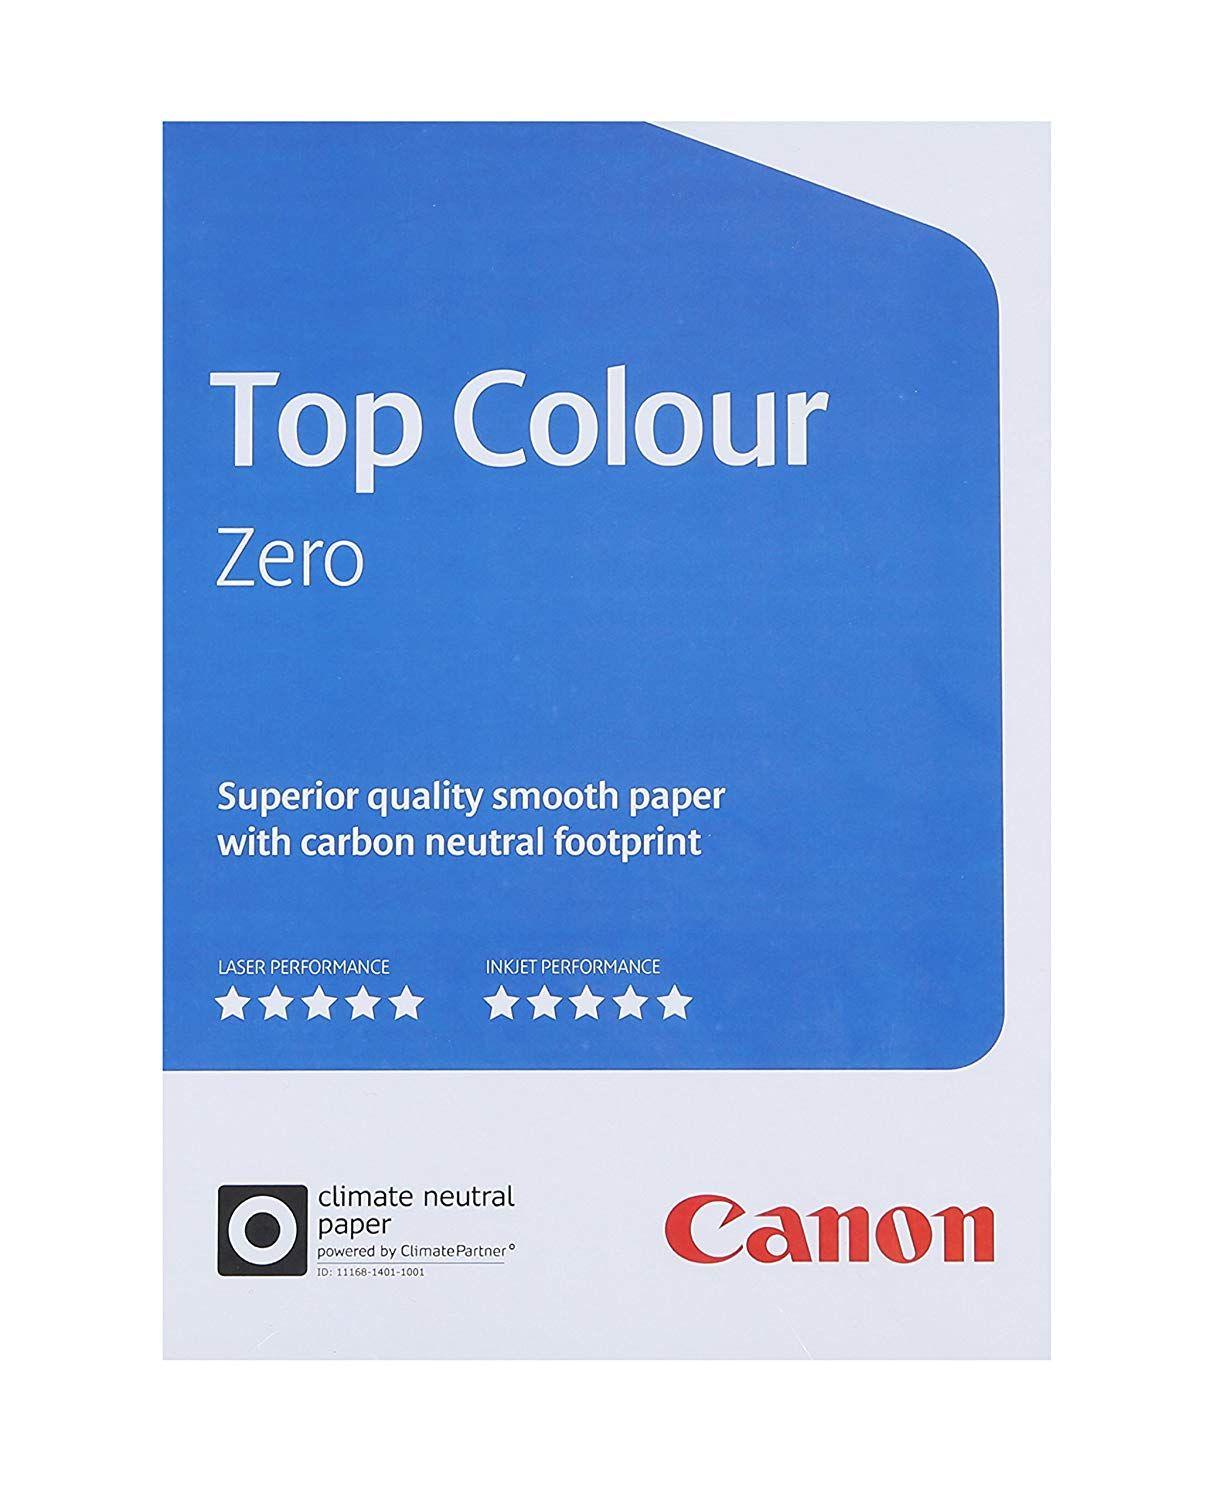 Canon Copiers Logo - Canon 99661554 Top Colour Zero Colour Copier Paper for all Printers ...